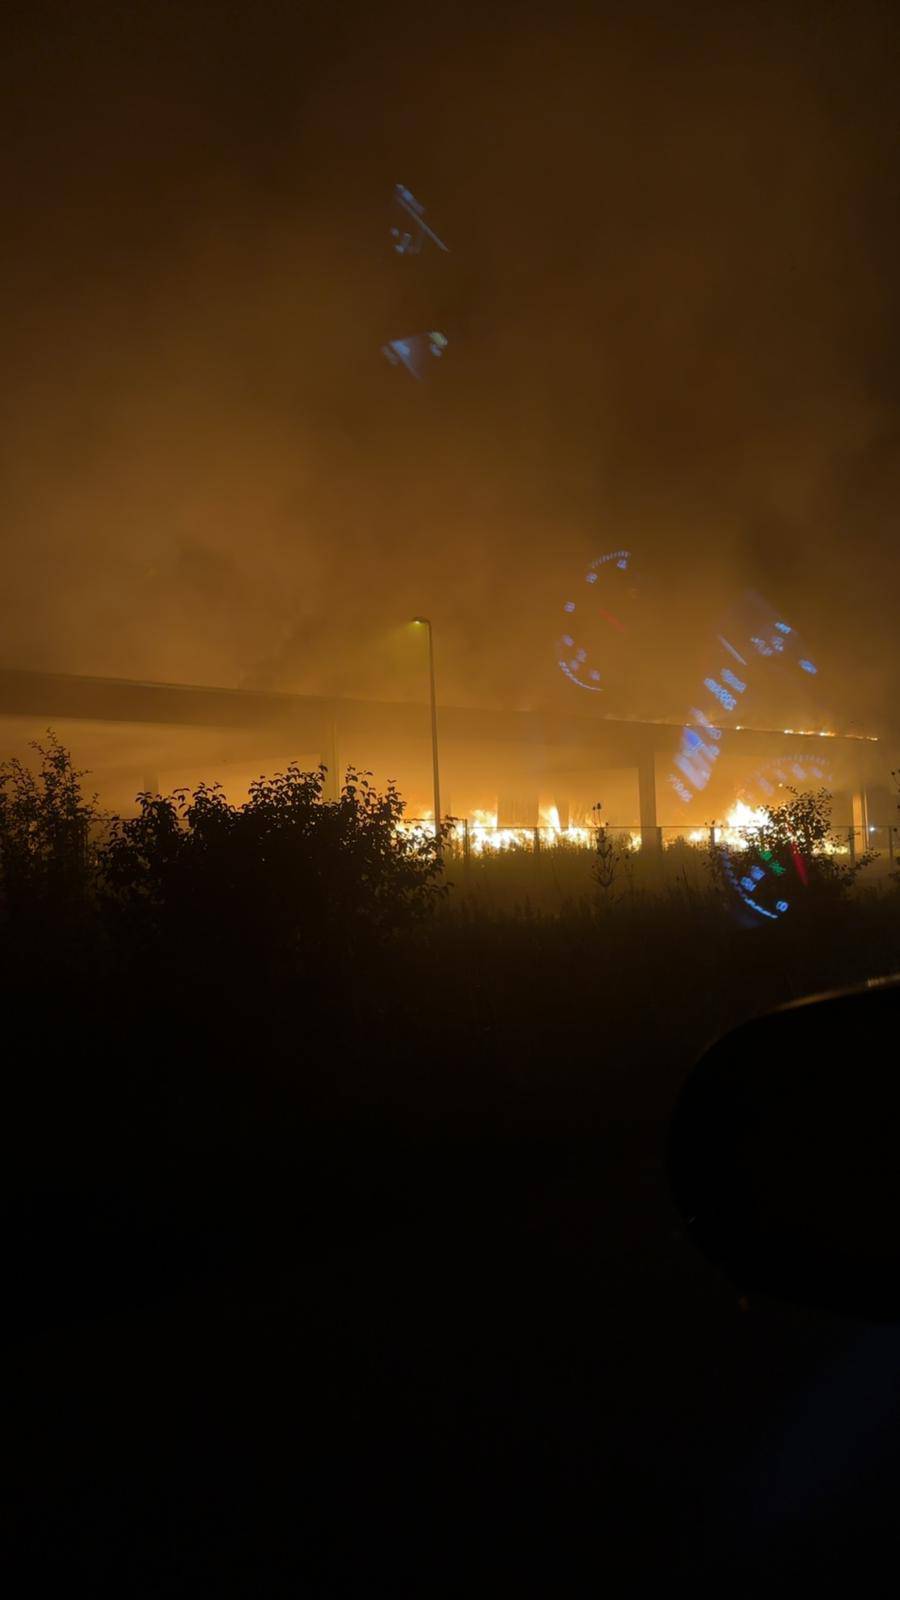 Galerija snimki i fotografija: Ovako je gorjelo na Jakuševcu! Vatru je gasilo 19 vatrogasaca